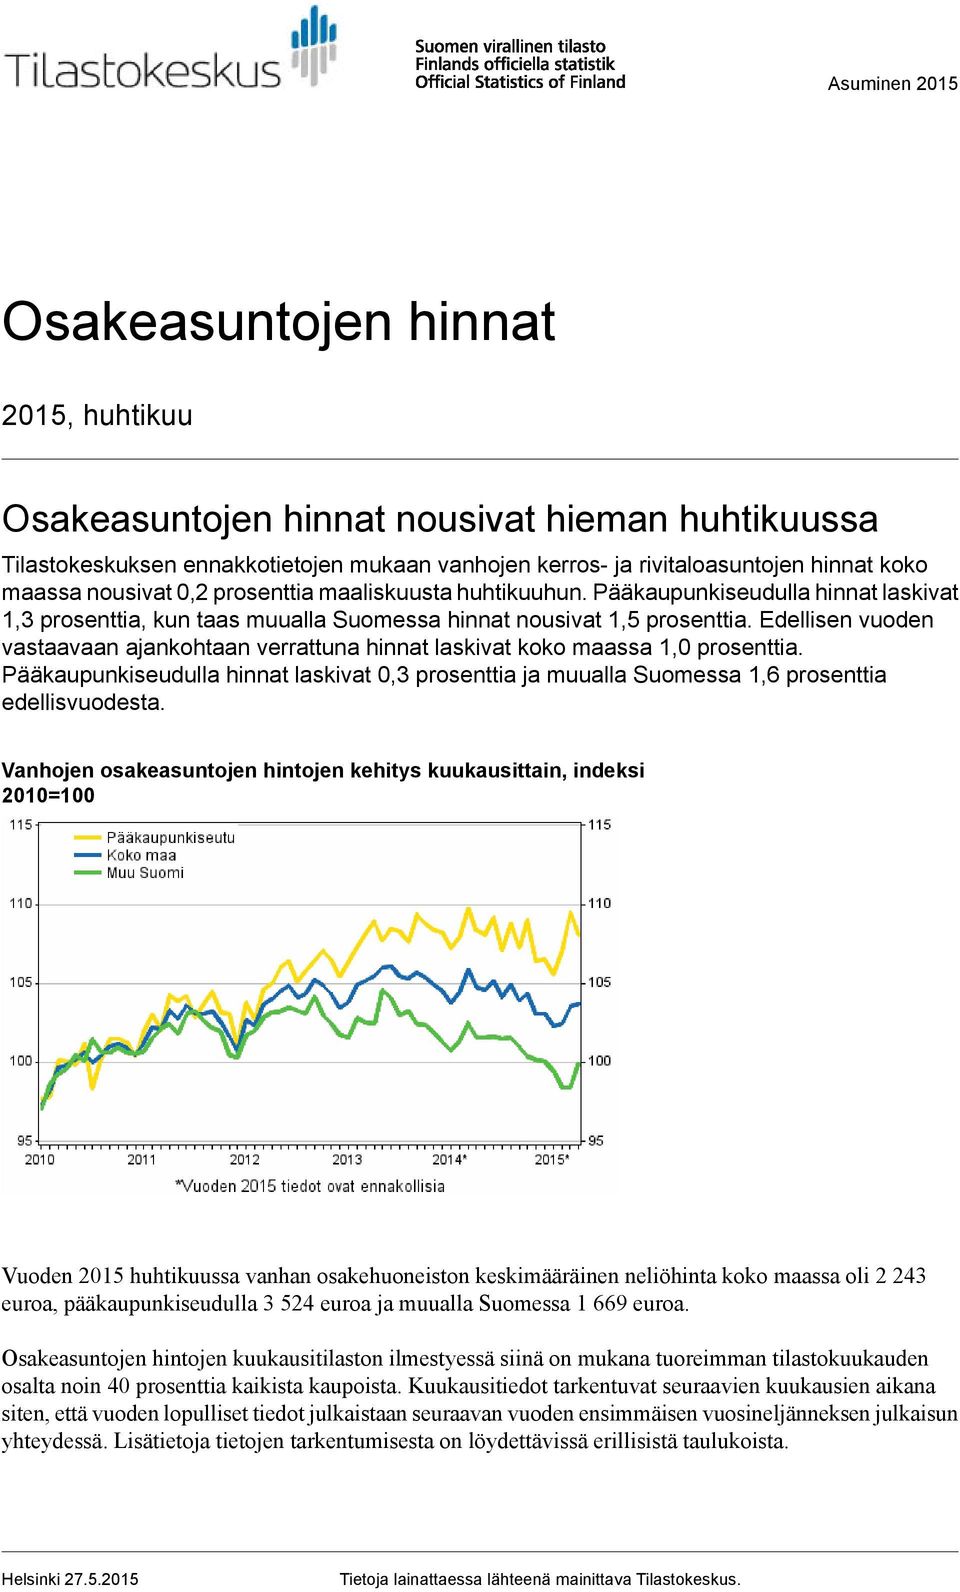 Edellisen vuoden vastaavaan ajankohtaan verrattuna hinnat laskivat koko maassa 1,0 prosenttia. Pääkaupunkiseudulla hinnat laskivat 0,3 prosenttia ja muualla Suomessa 1,6 prosenttia edellisvuodesta.